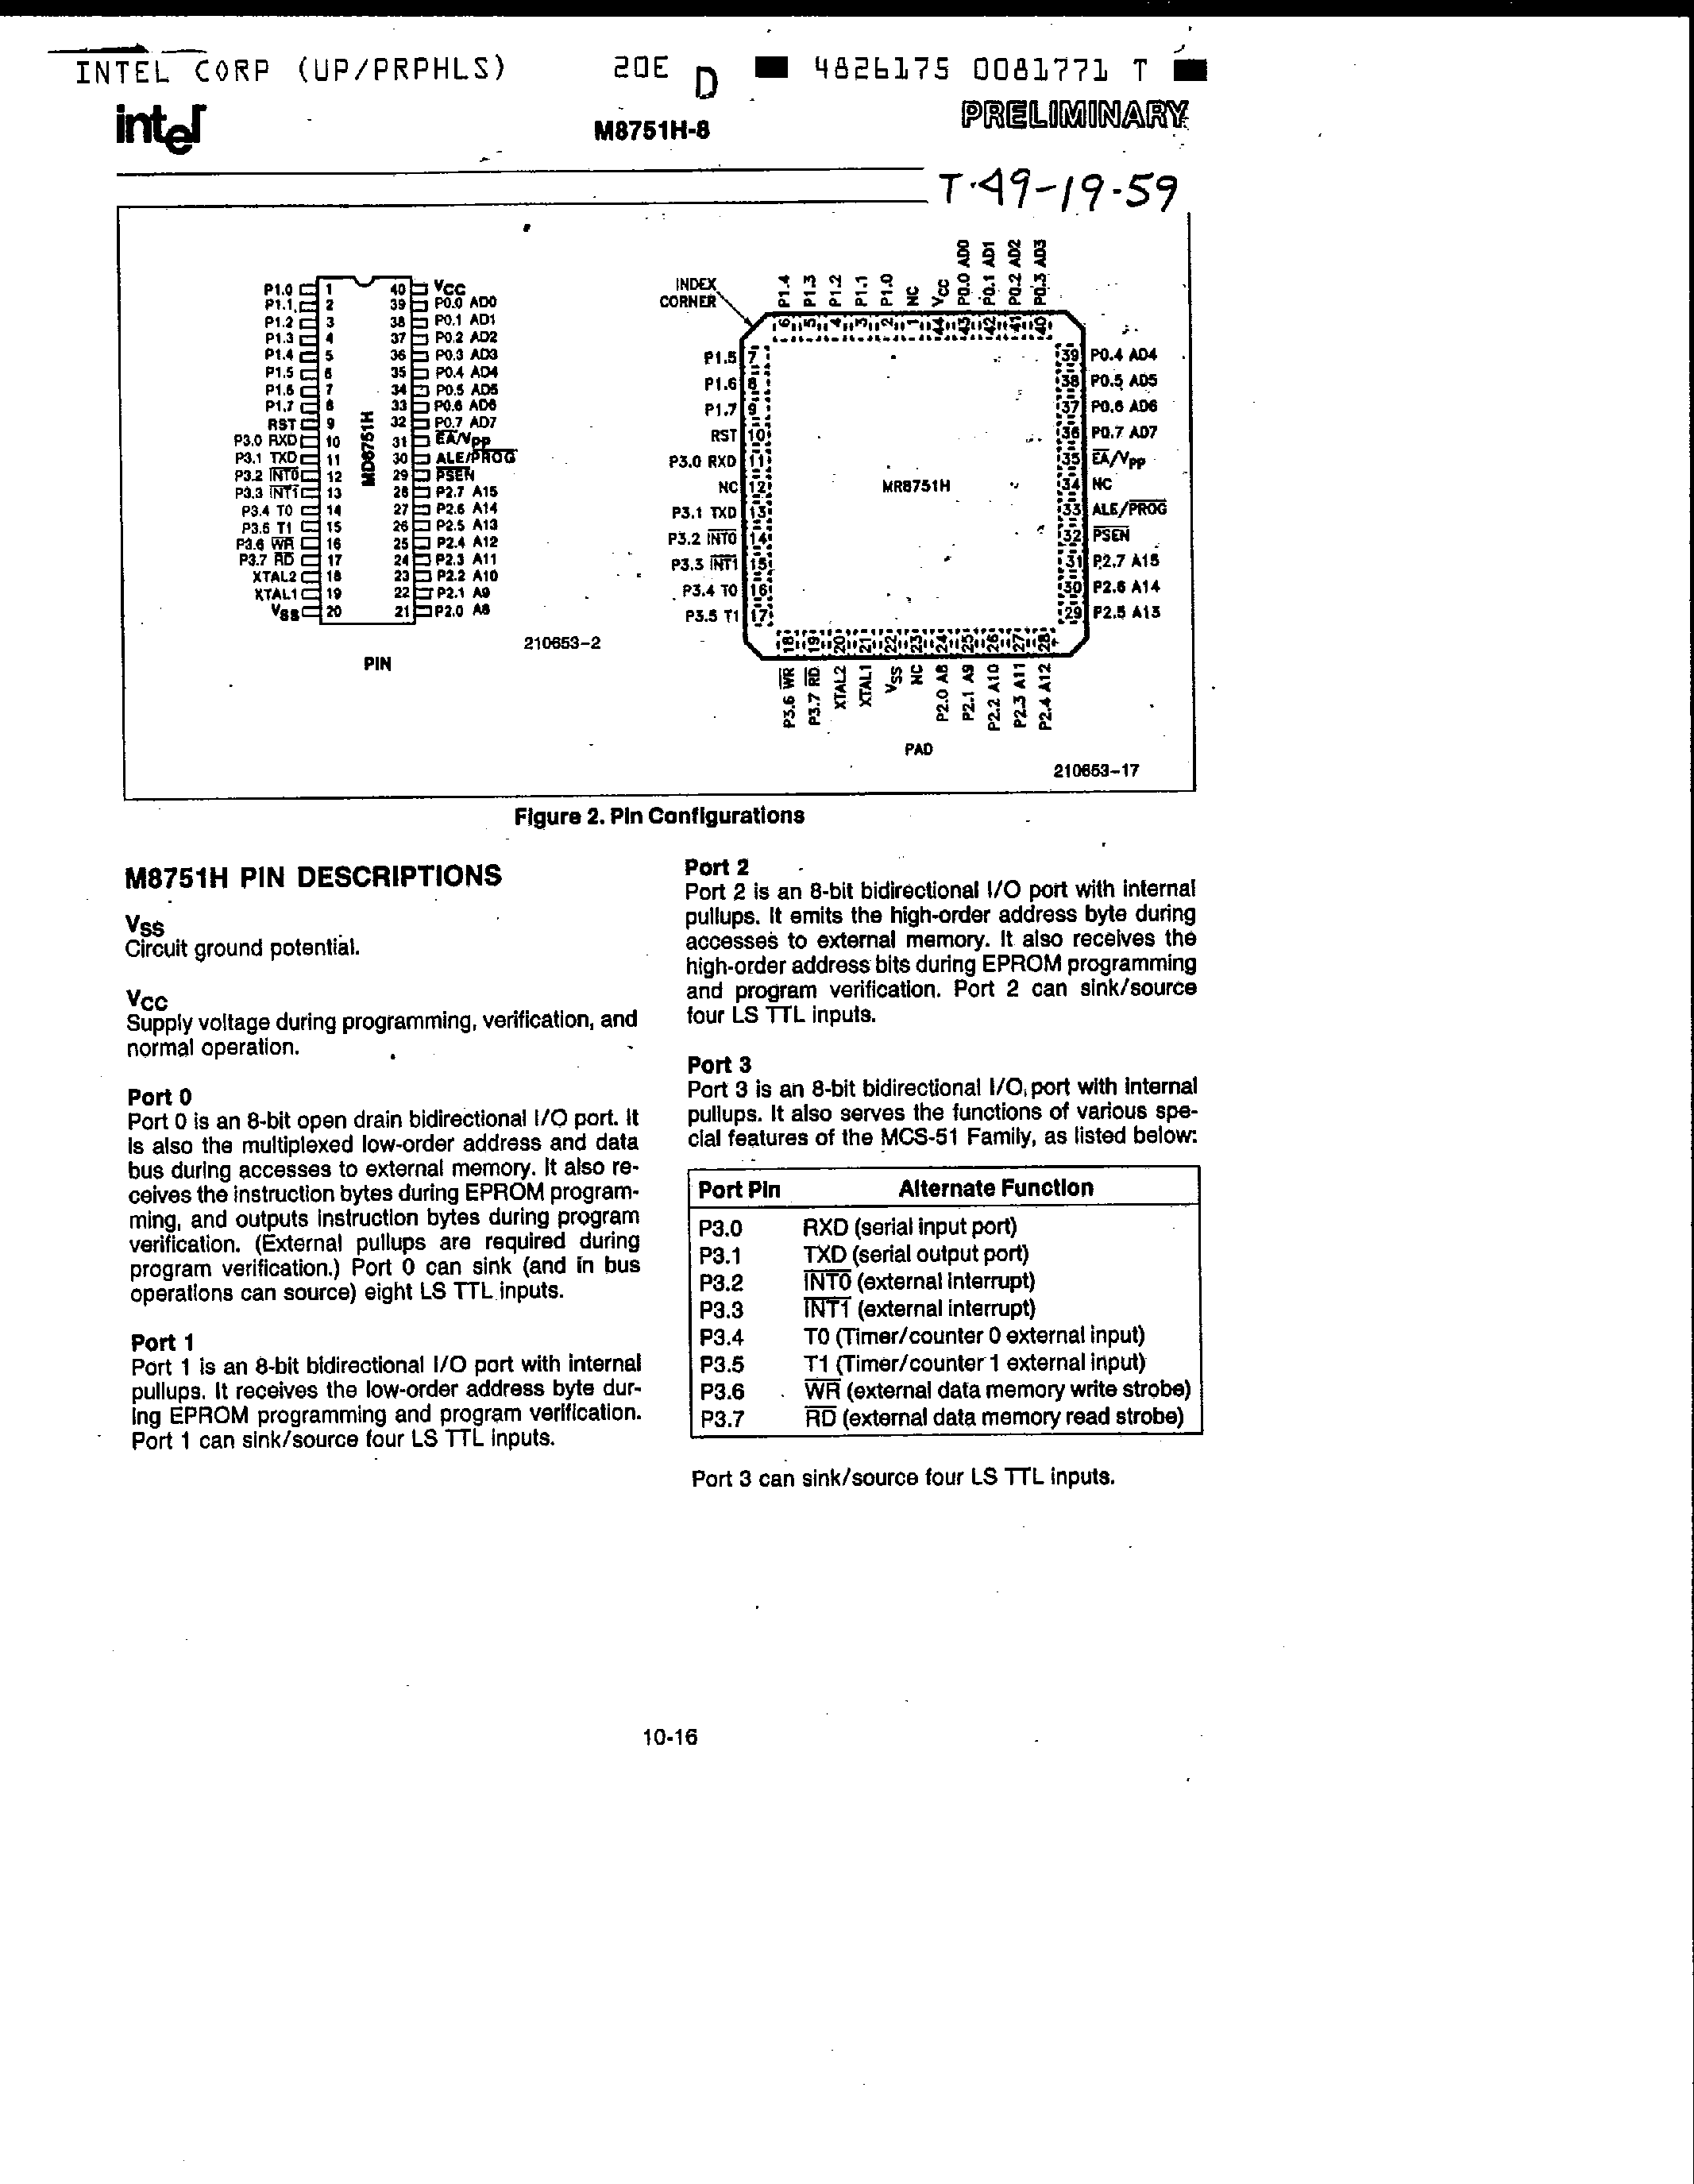 Даташит MD8751H-8 - Single-Component 8 Bit Microcomputer страница 2